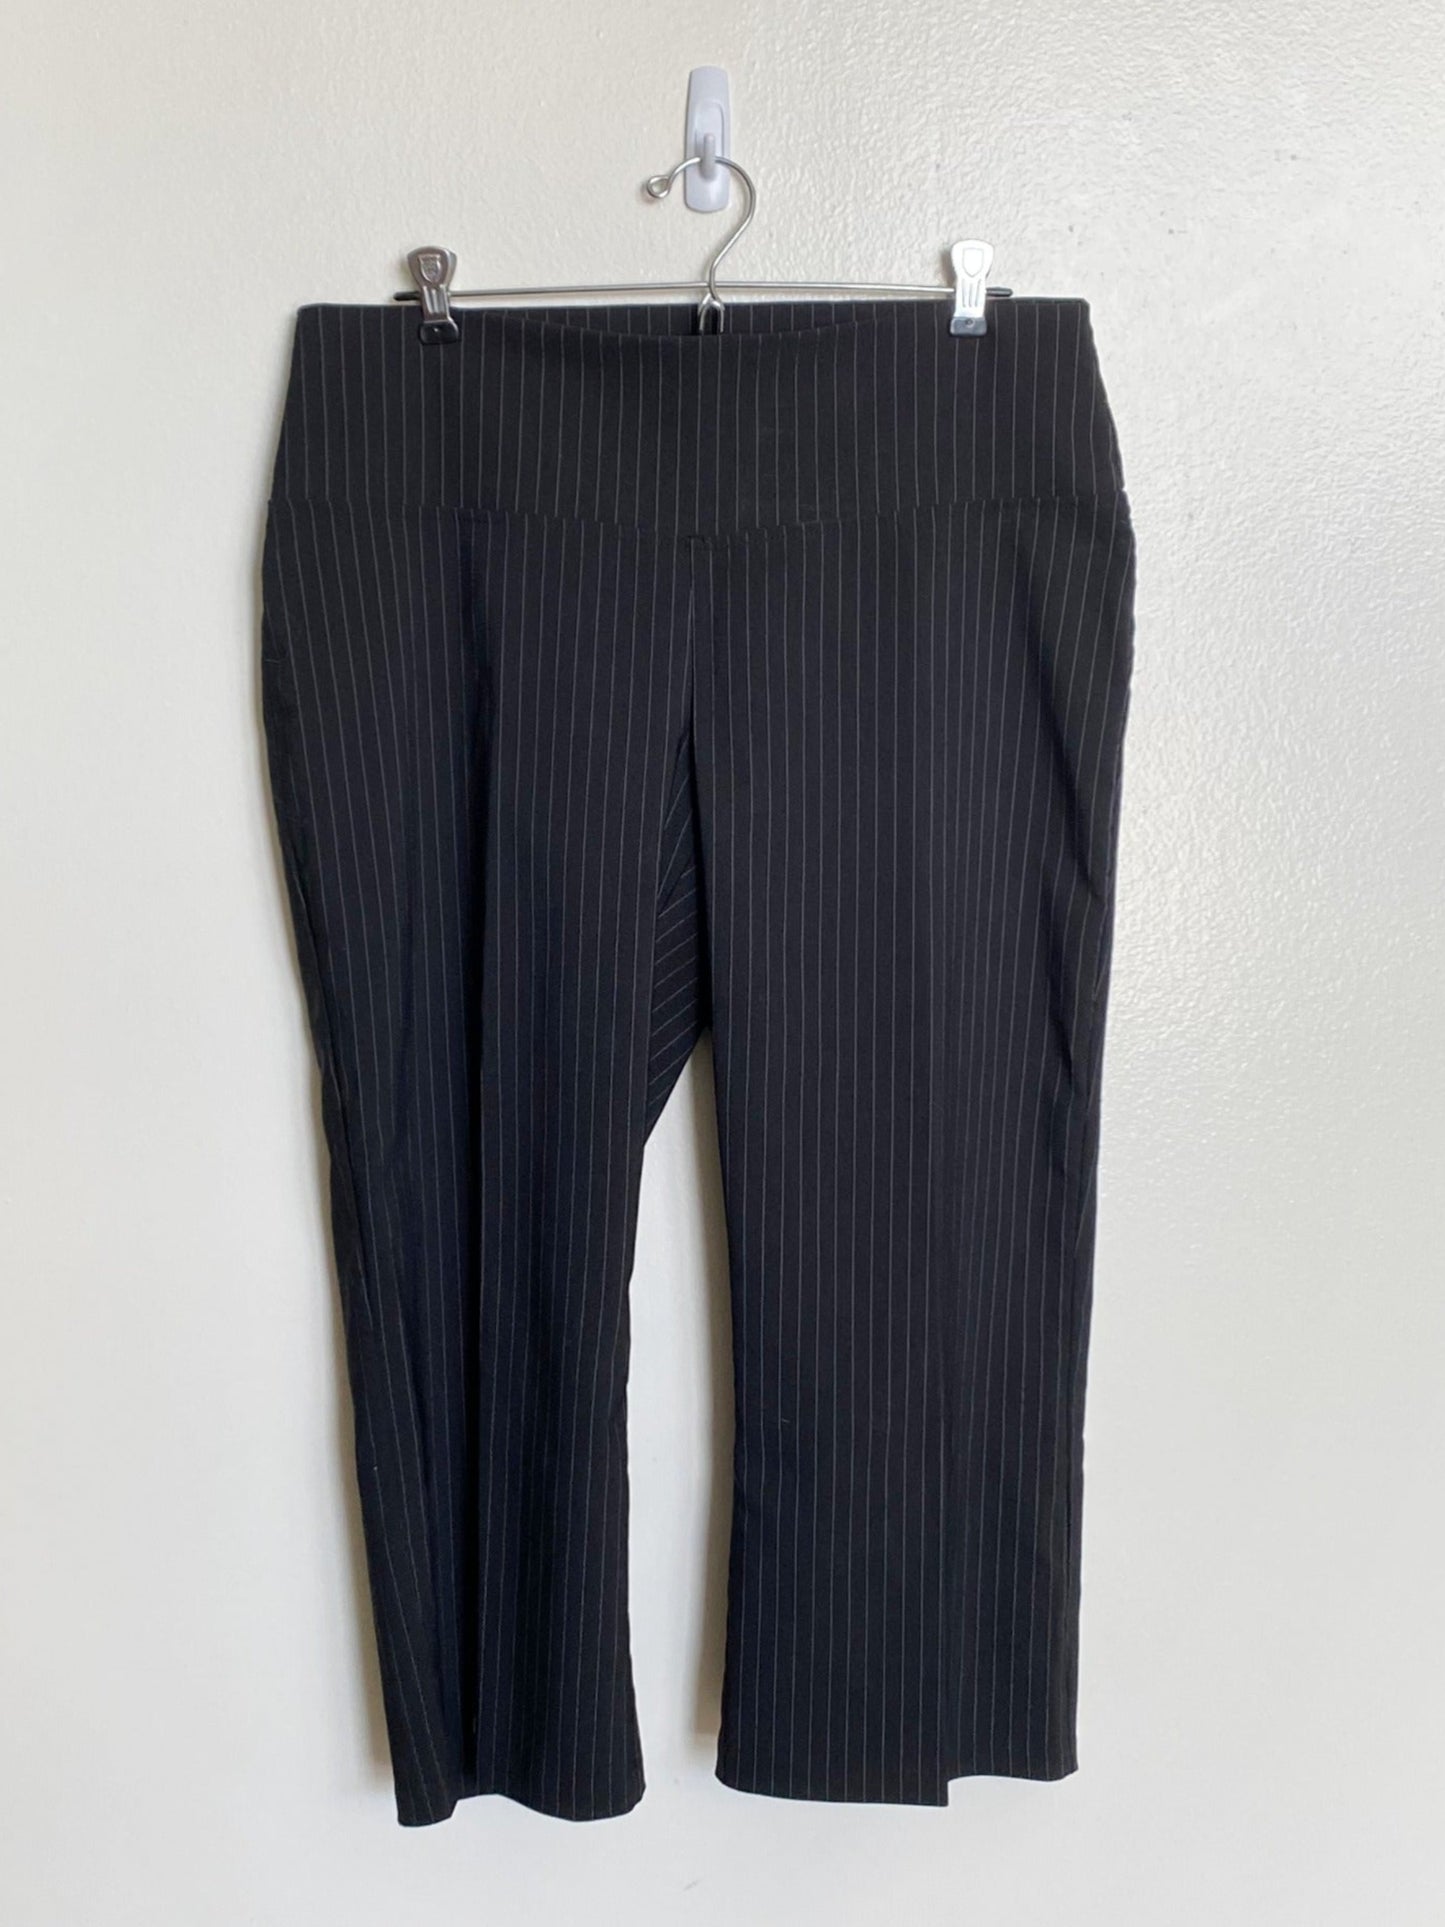 Striped Capri Pants (Size 11)